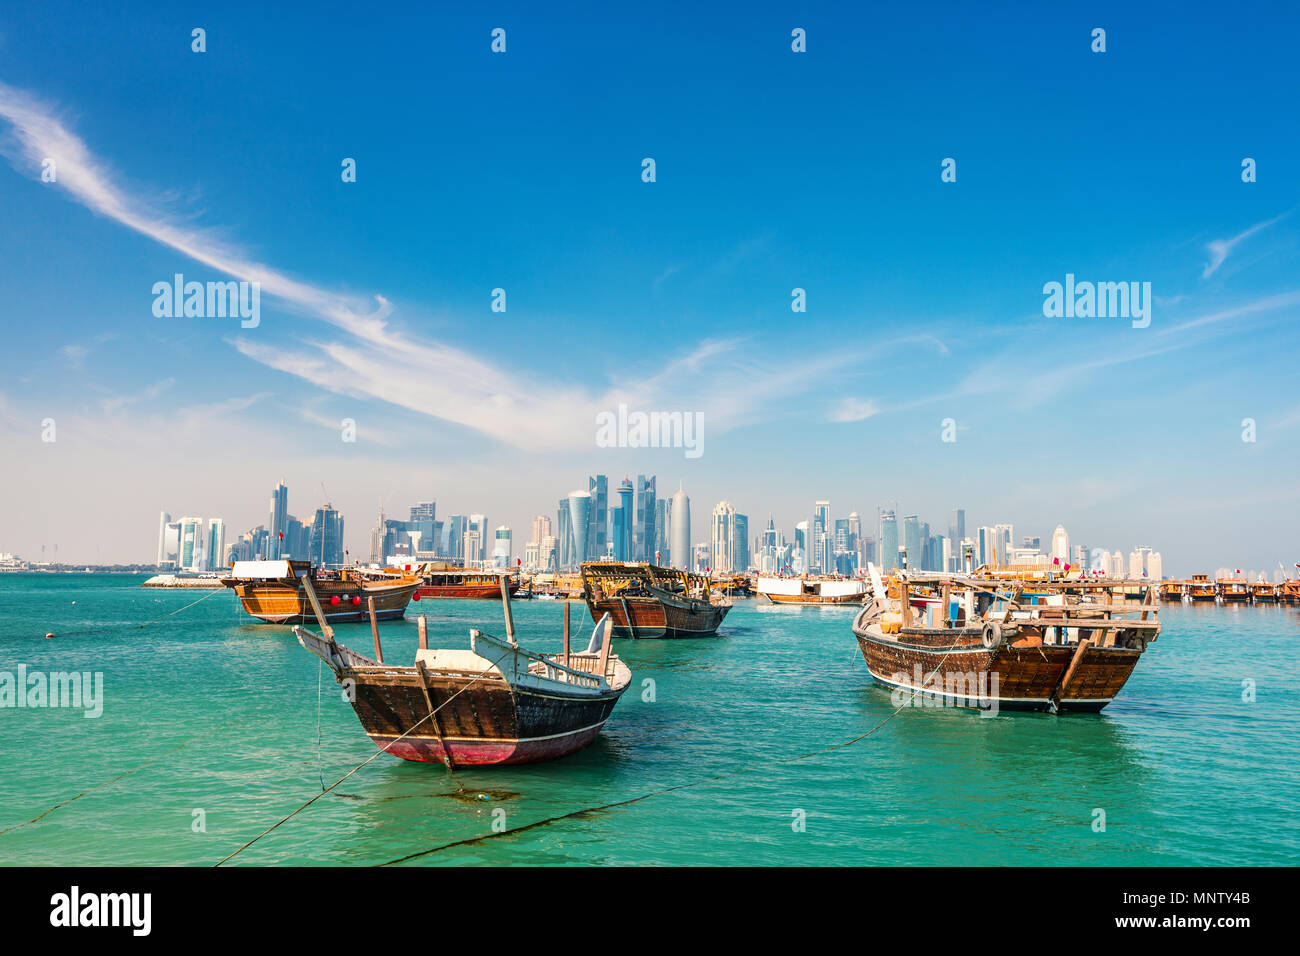 Waterfront en Doha (Qatar) con pequeños barcos de madera tradicional conocido como "dhow" y el horizonte de la ciudad Foto de stock